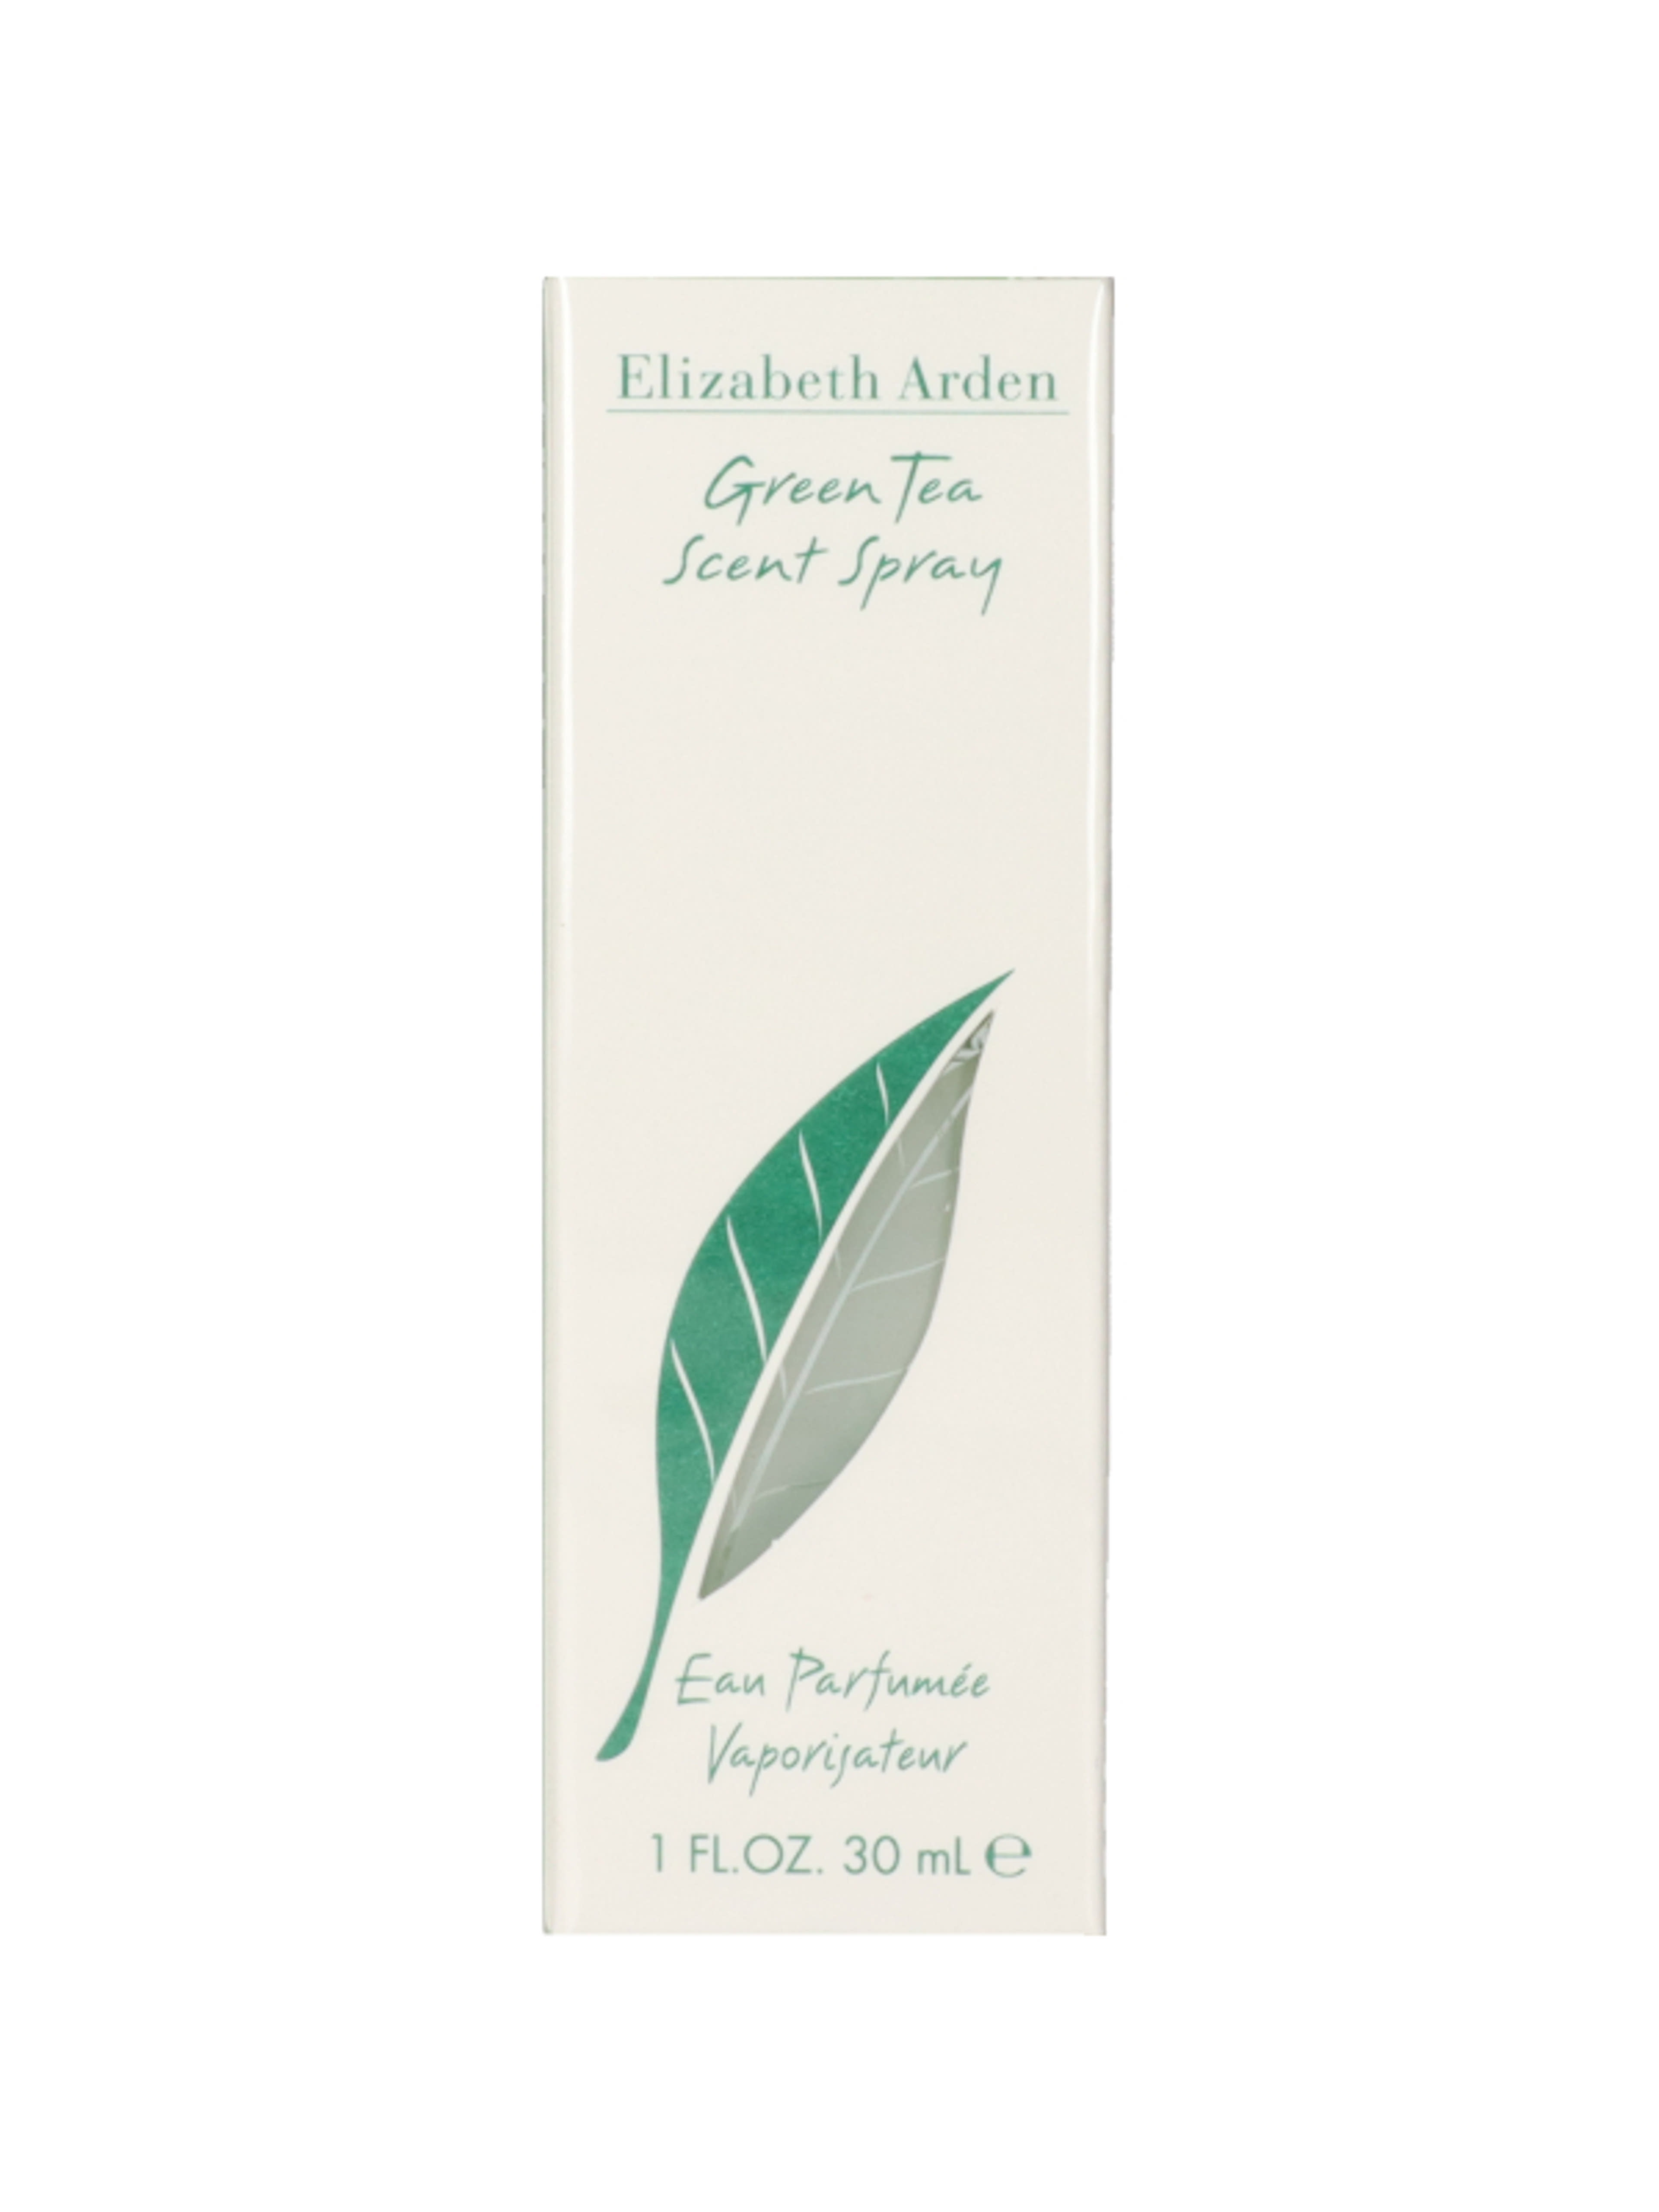 Elizabeth Arden Green Tea noi Eau de Toilette - 30 ml